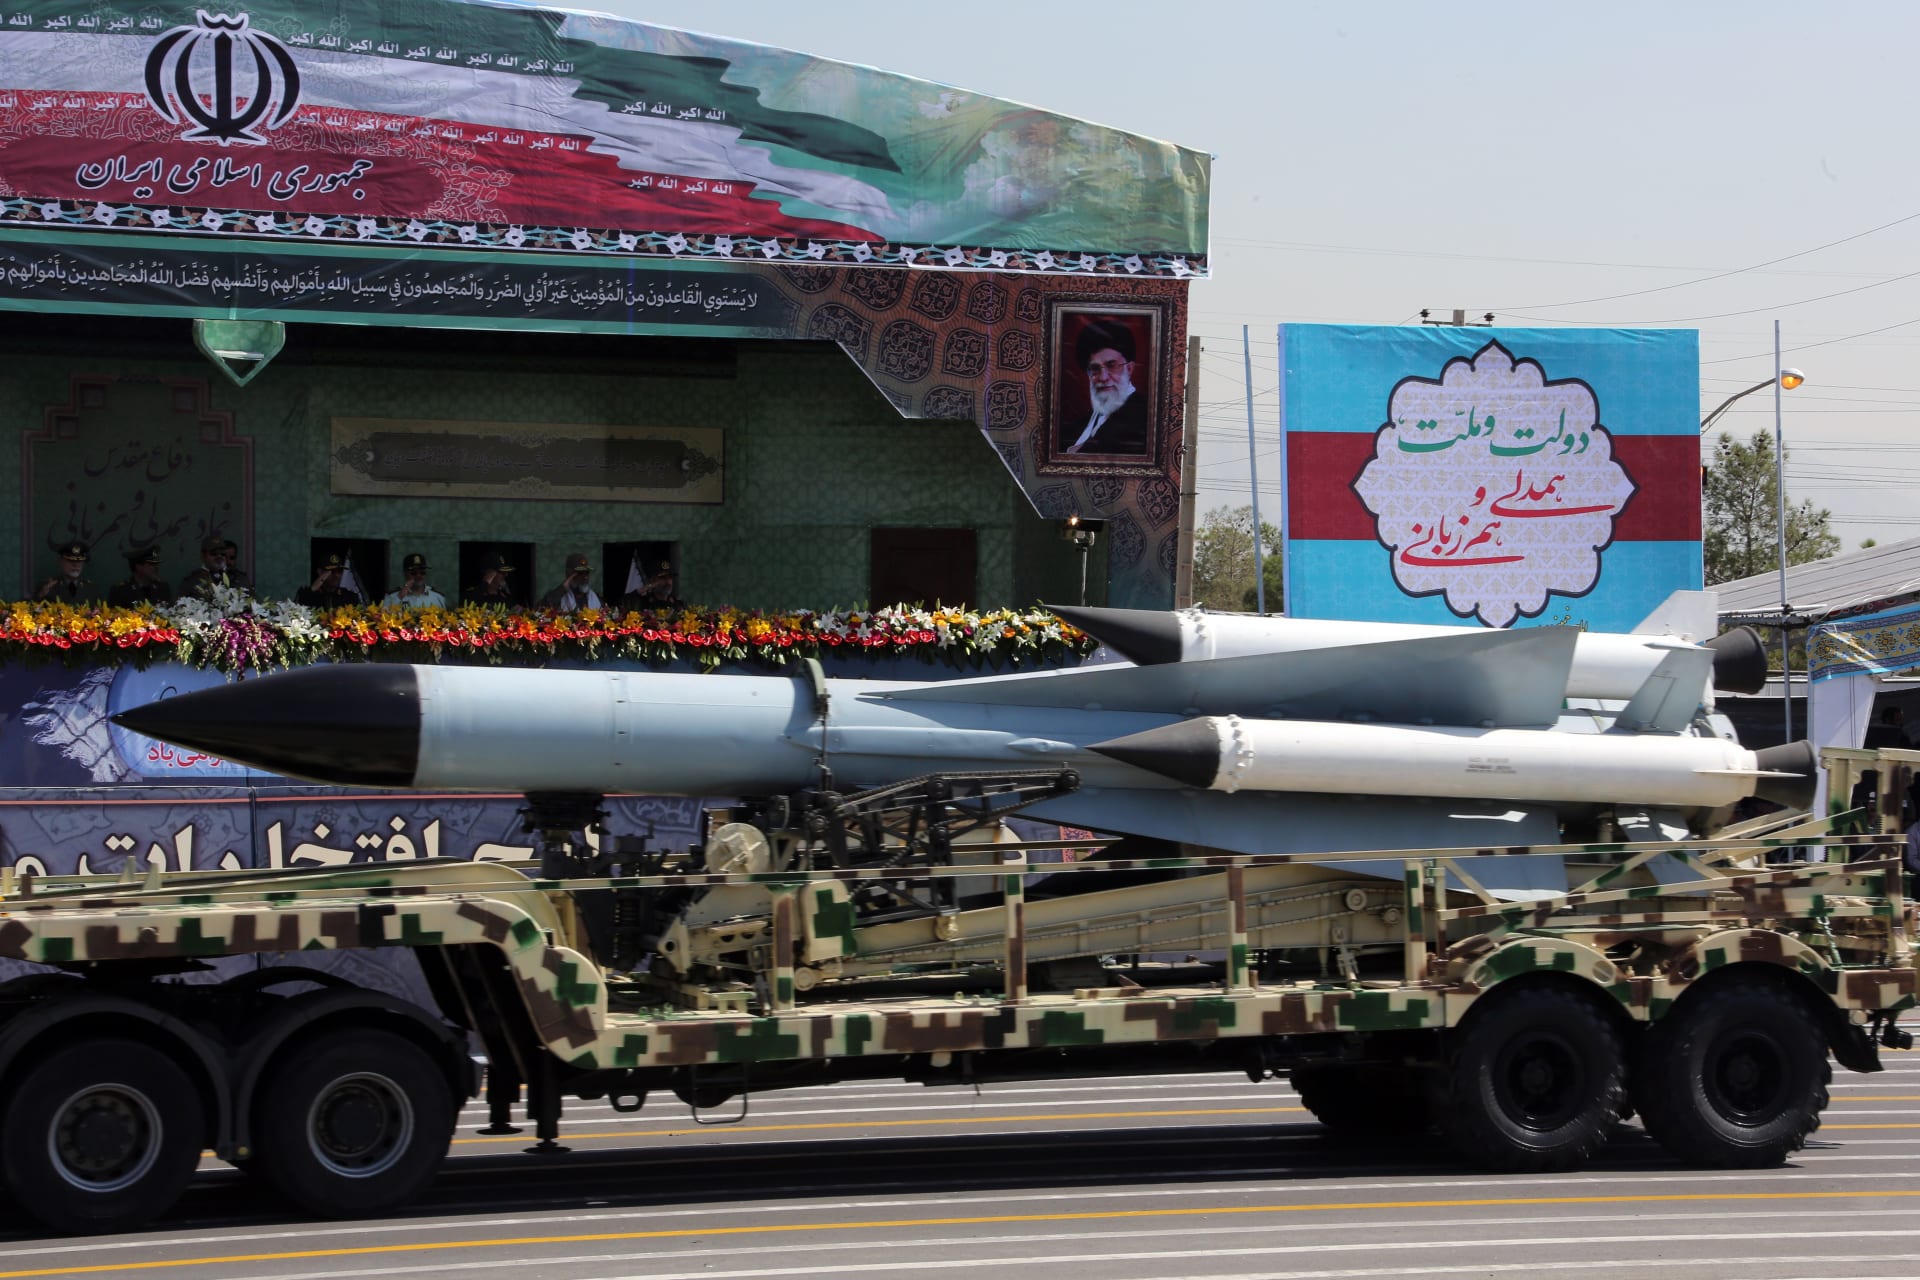 إيران تُطلق صاروخا كُتب عليه بالعبرية "يجب محو إسرائيل".. وتتوعد: صواريخنا متاحة لفلسطين وسوريا ولبنان والعراق